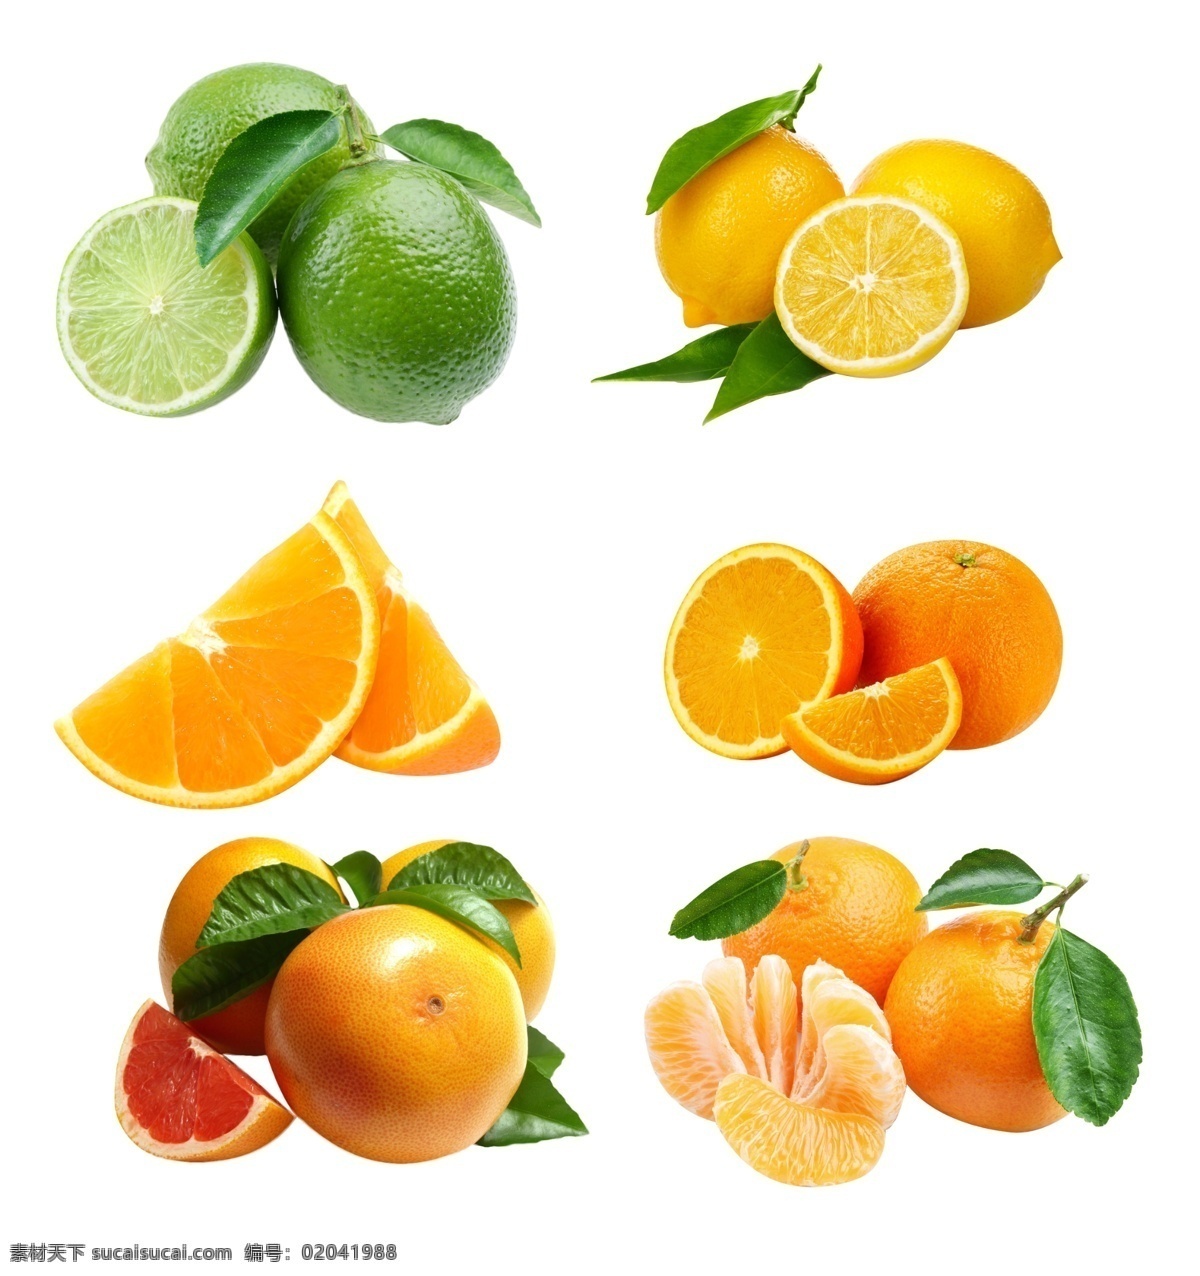 橙子 柠檬 橘子 矢量素材 水果 手绘 水果大全 新鲜水果素材 矢量水果素材 矢量 水果素材 新鲜水果 矢量水果 写实水果 矢量橙子 橙子素材 橙子切片 切开的橙子 脐橙 新鲜橙子 橙子大全 柠檬素材 矢量柠檬 新鲜柠檬 青柠檬 橘子素材 新鲜橘子 水果大丰收 大丰收